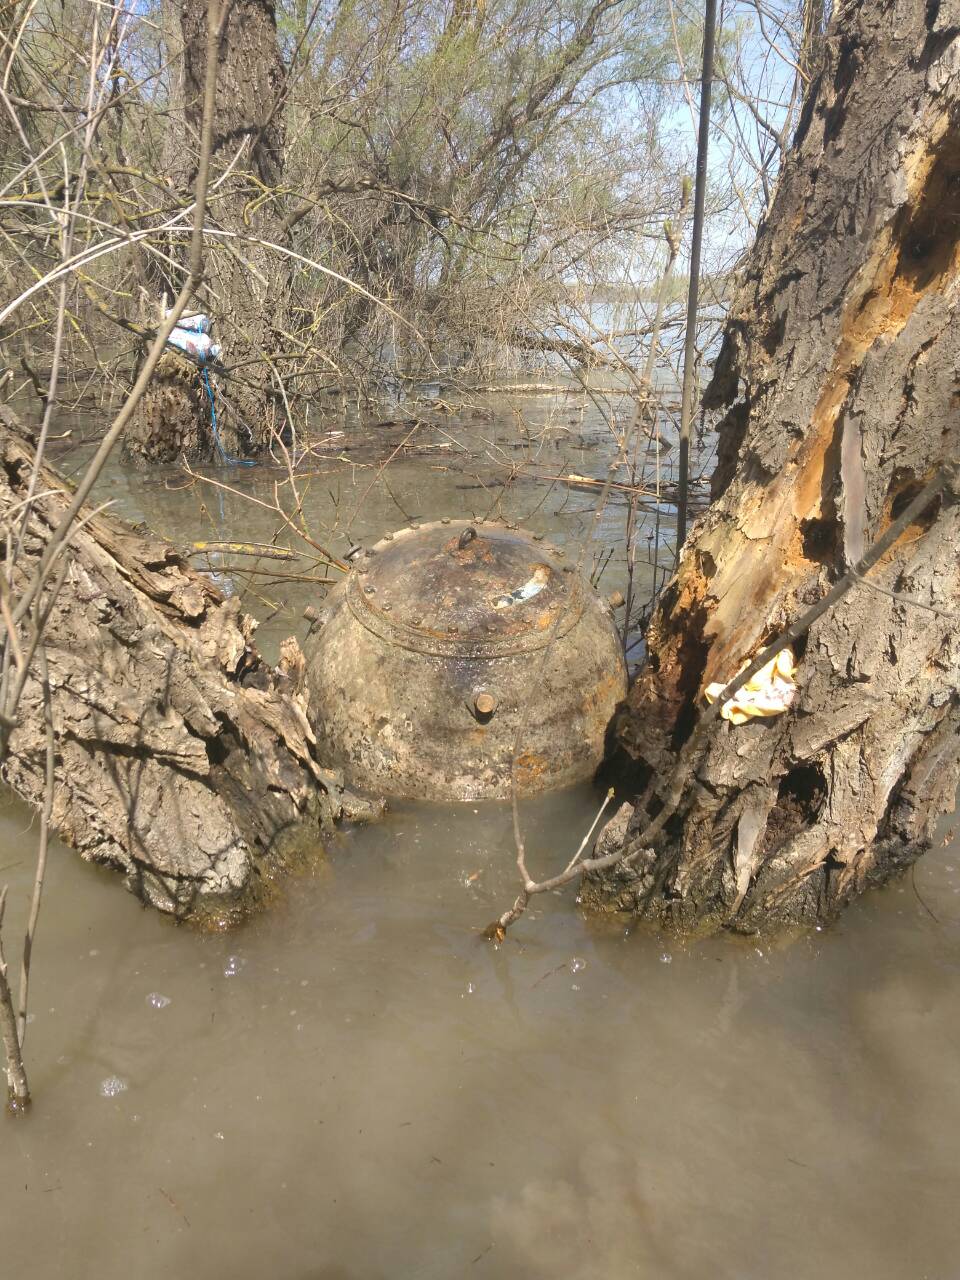 Одещина: в акваторії Дунаю знайшли і знищили майже 100-річну міну (ФОТО)